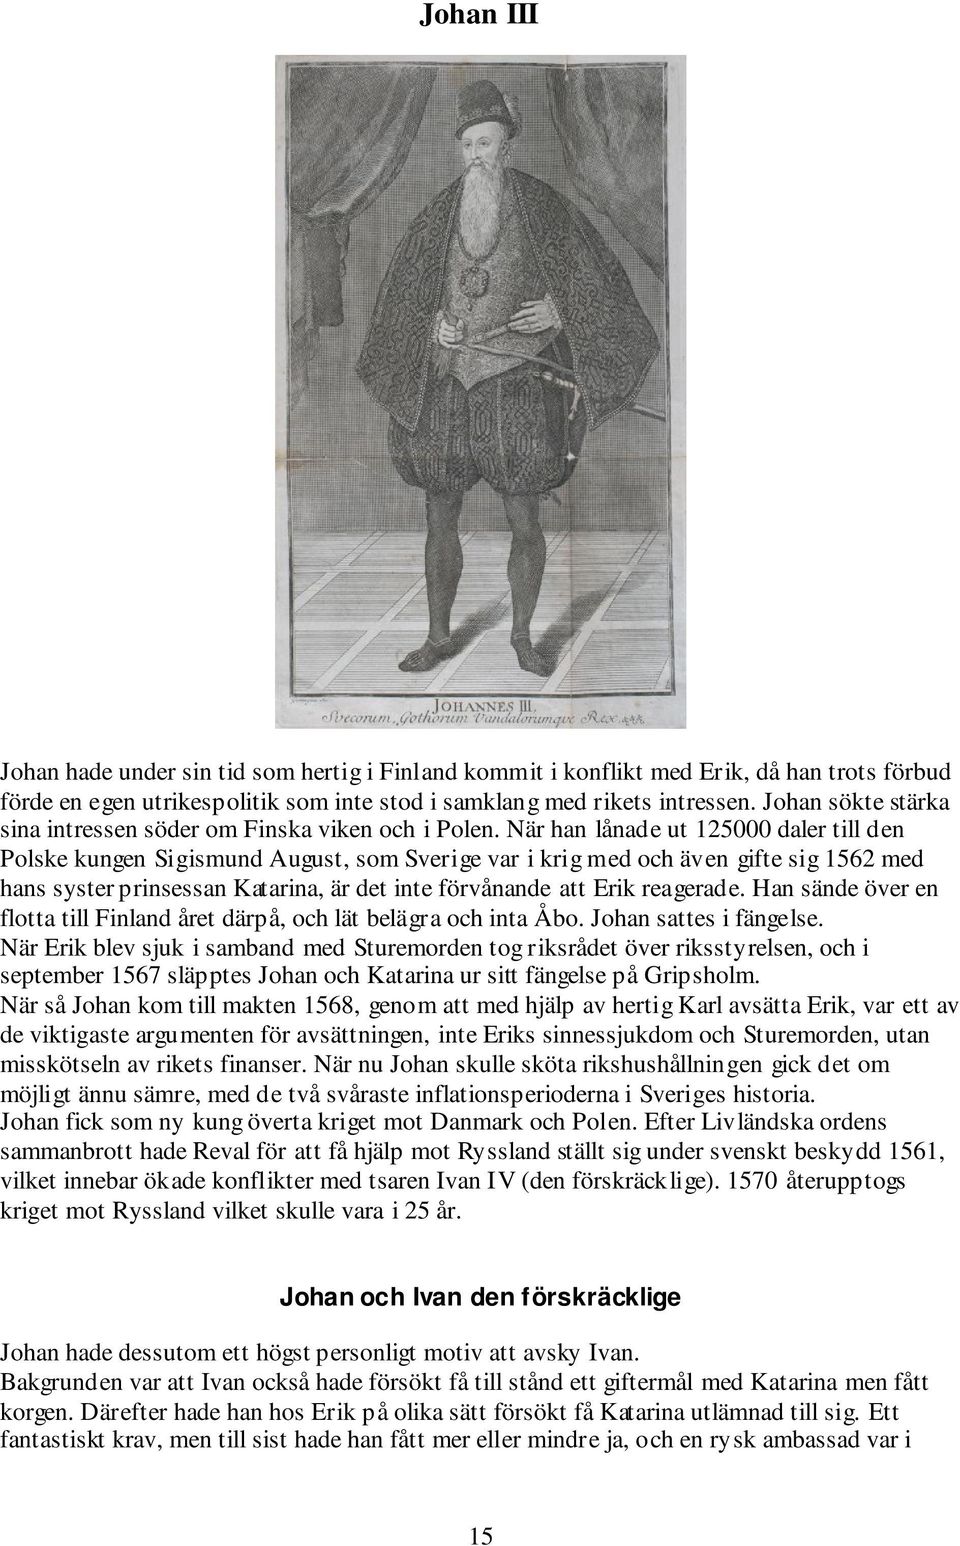 När han lånade ut 125000 daler till den Polske kungen Sigismund August, som Sverige var i krig med och även gifte sig 1562 med hans syster prinsessan Katarina, är det inte förvånande att Erik